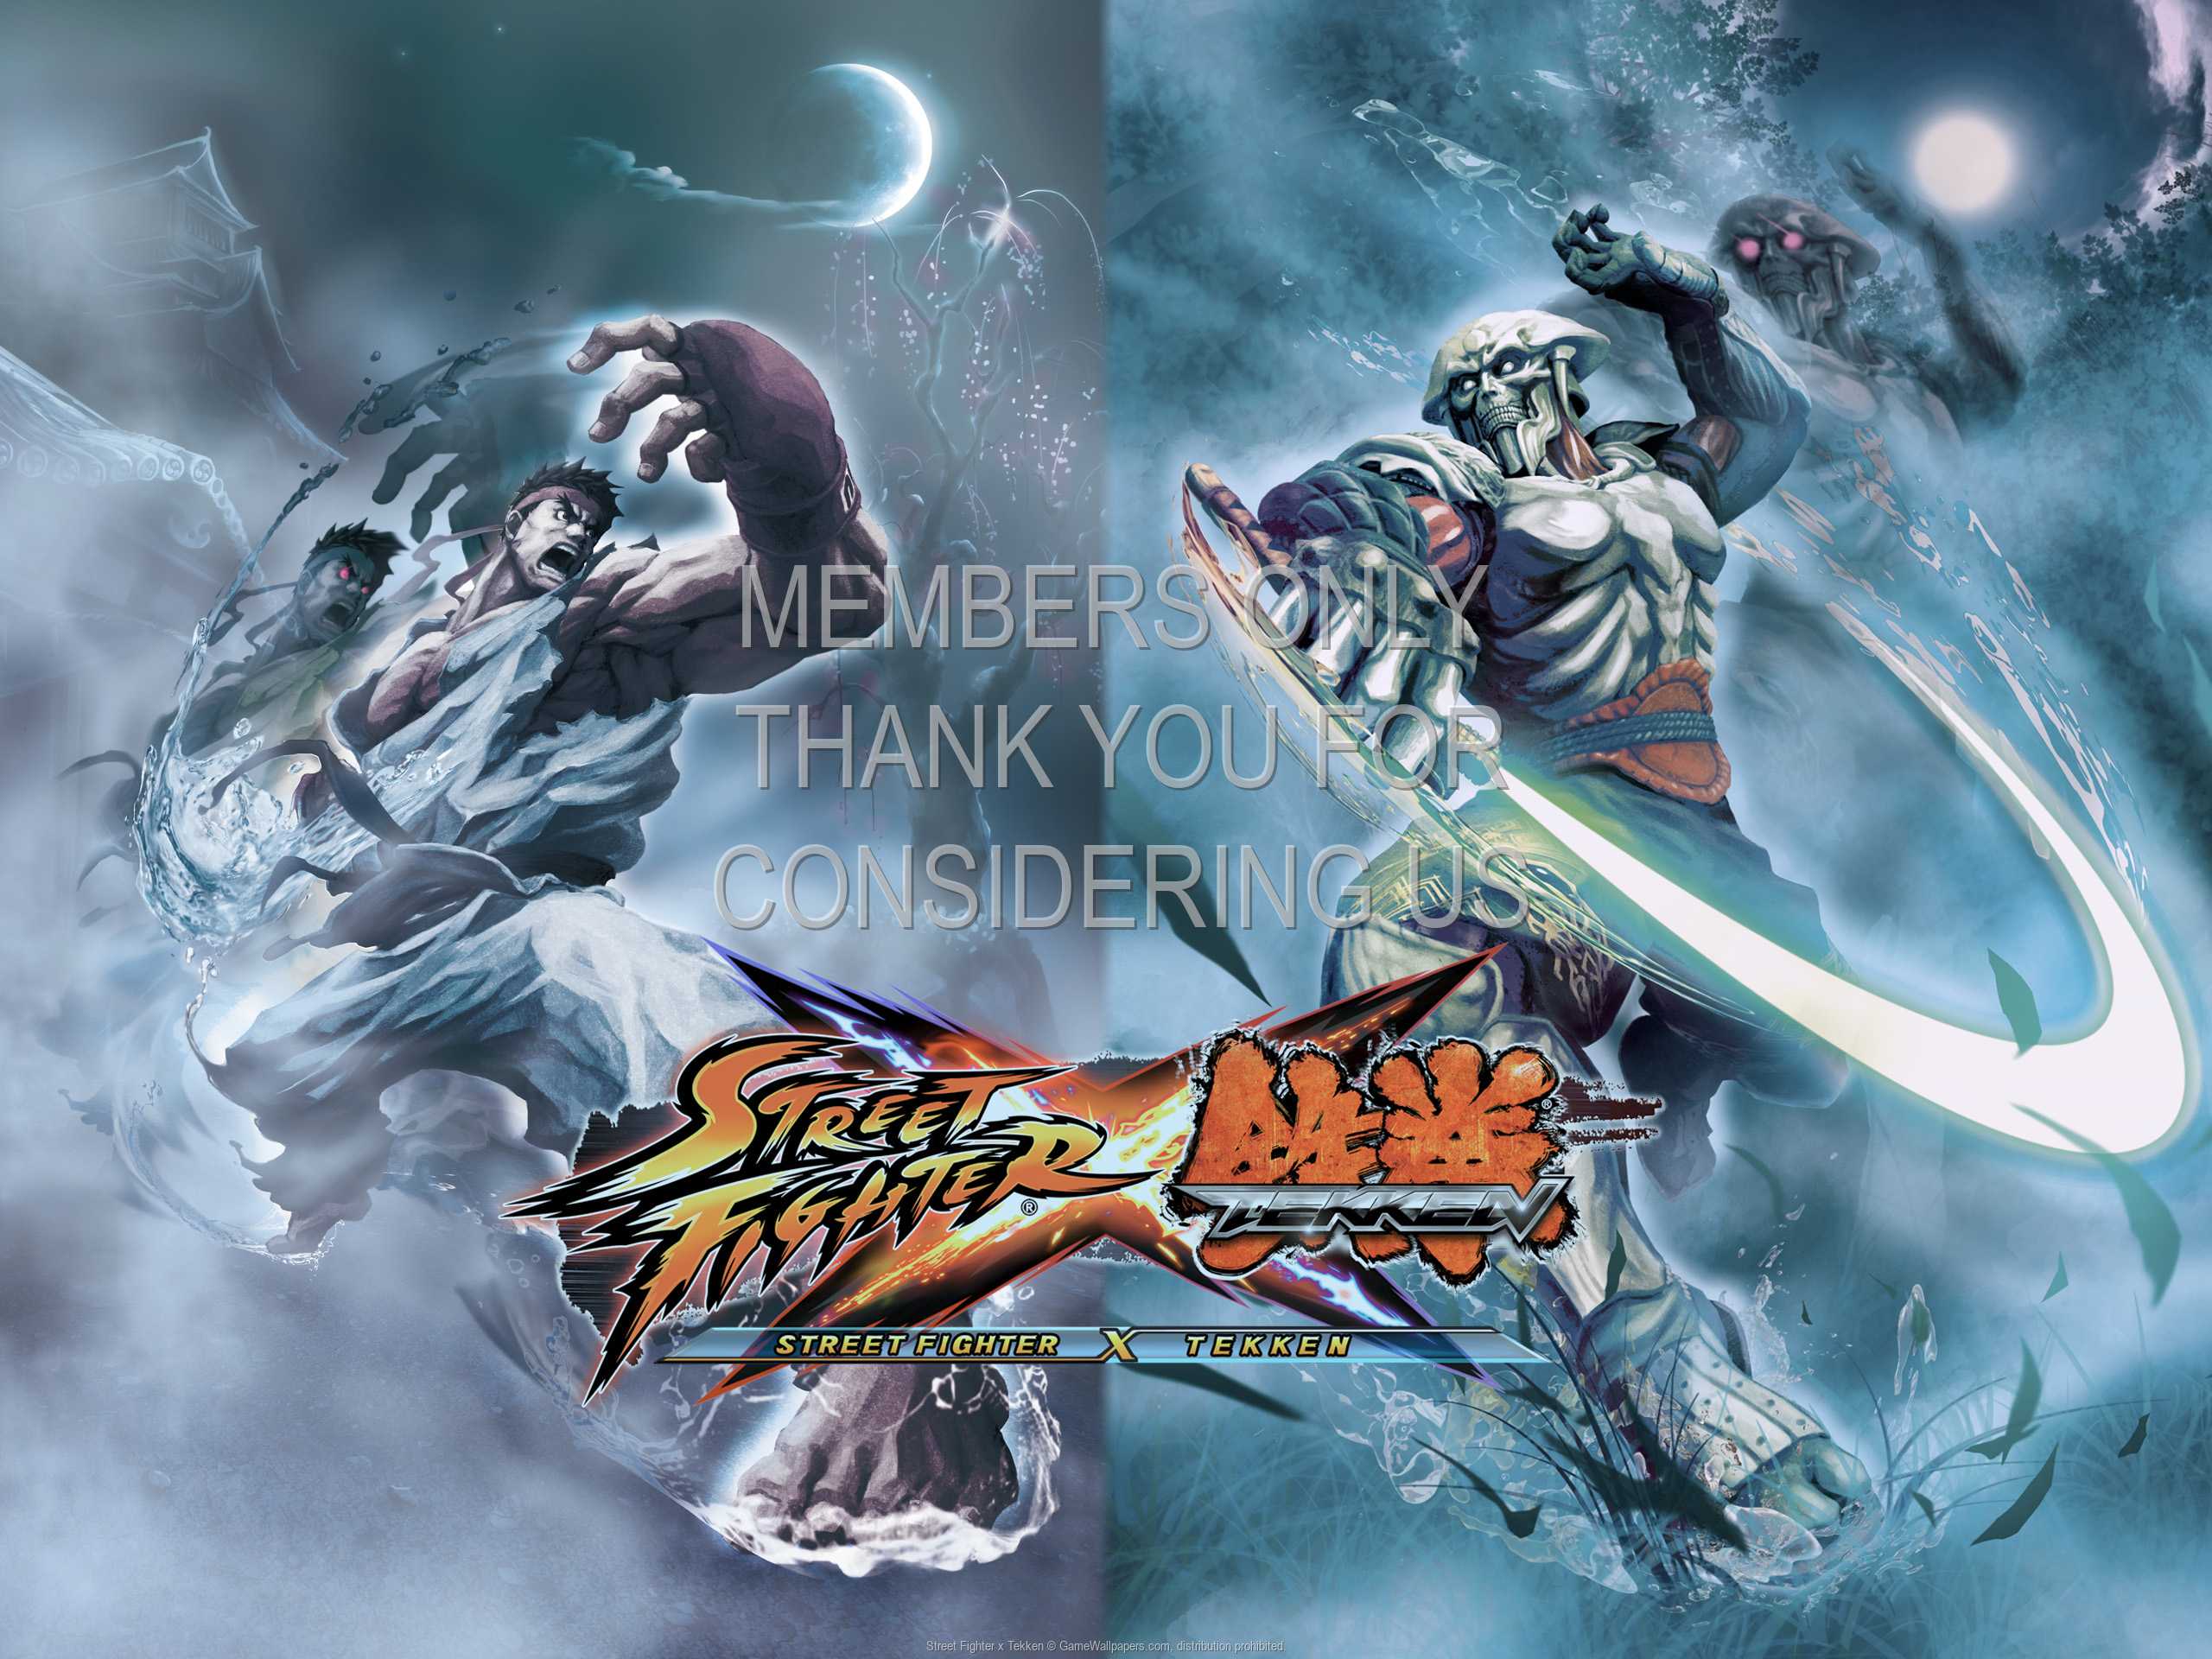 Street Fighter x Tekken 1080p%20Horizontal Mobile wallpaper or background 03